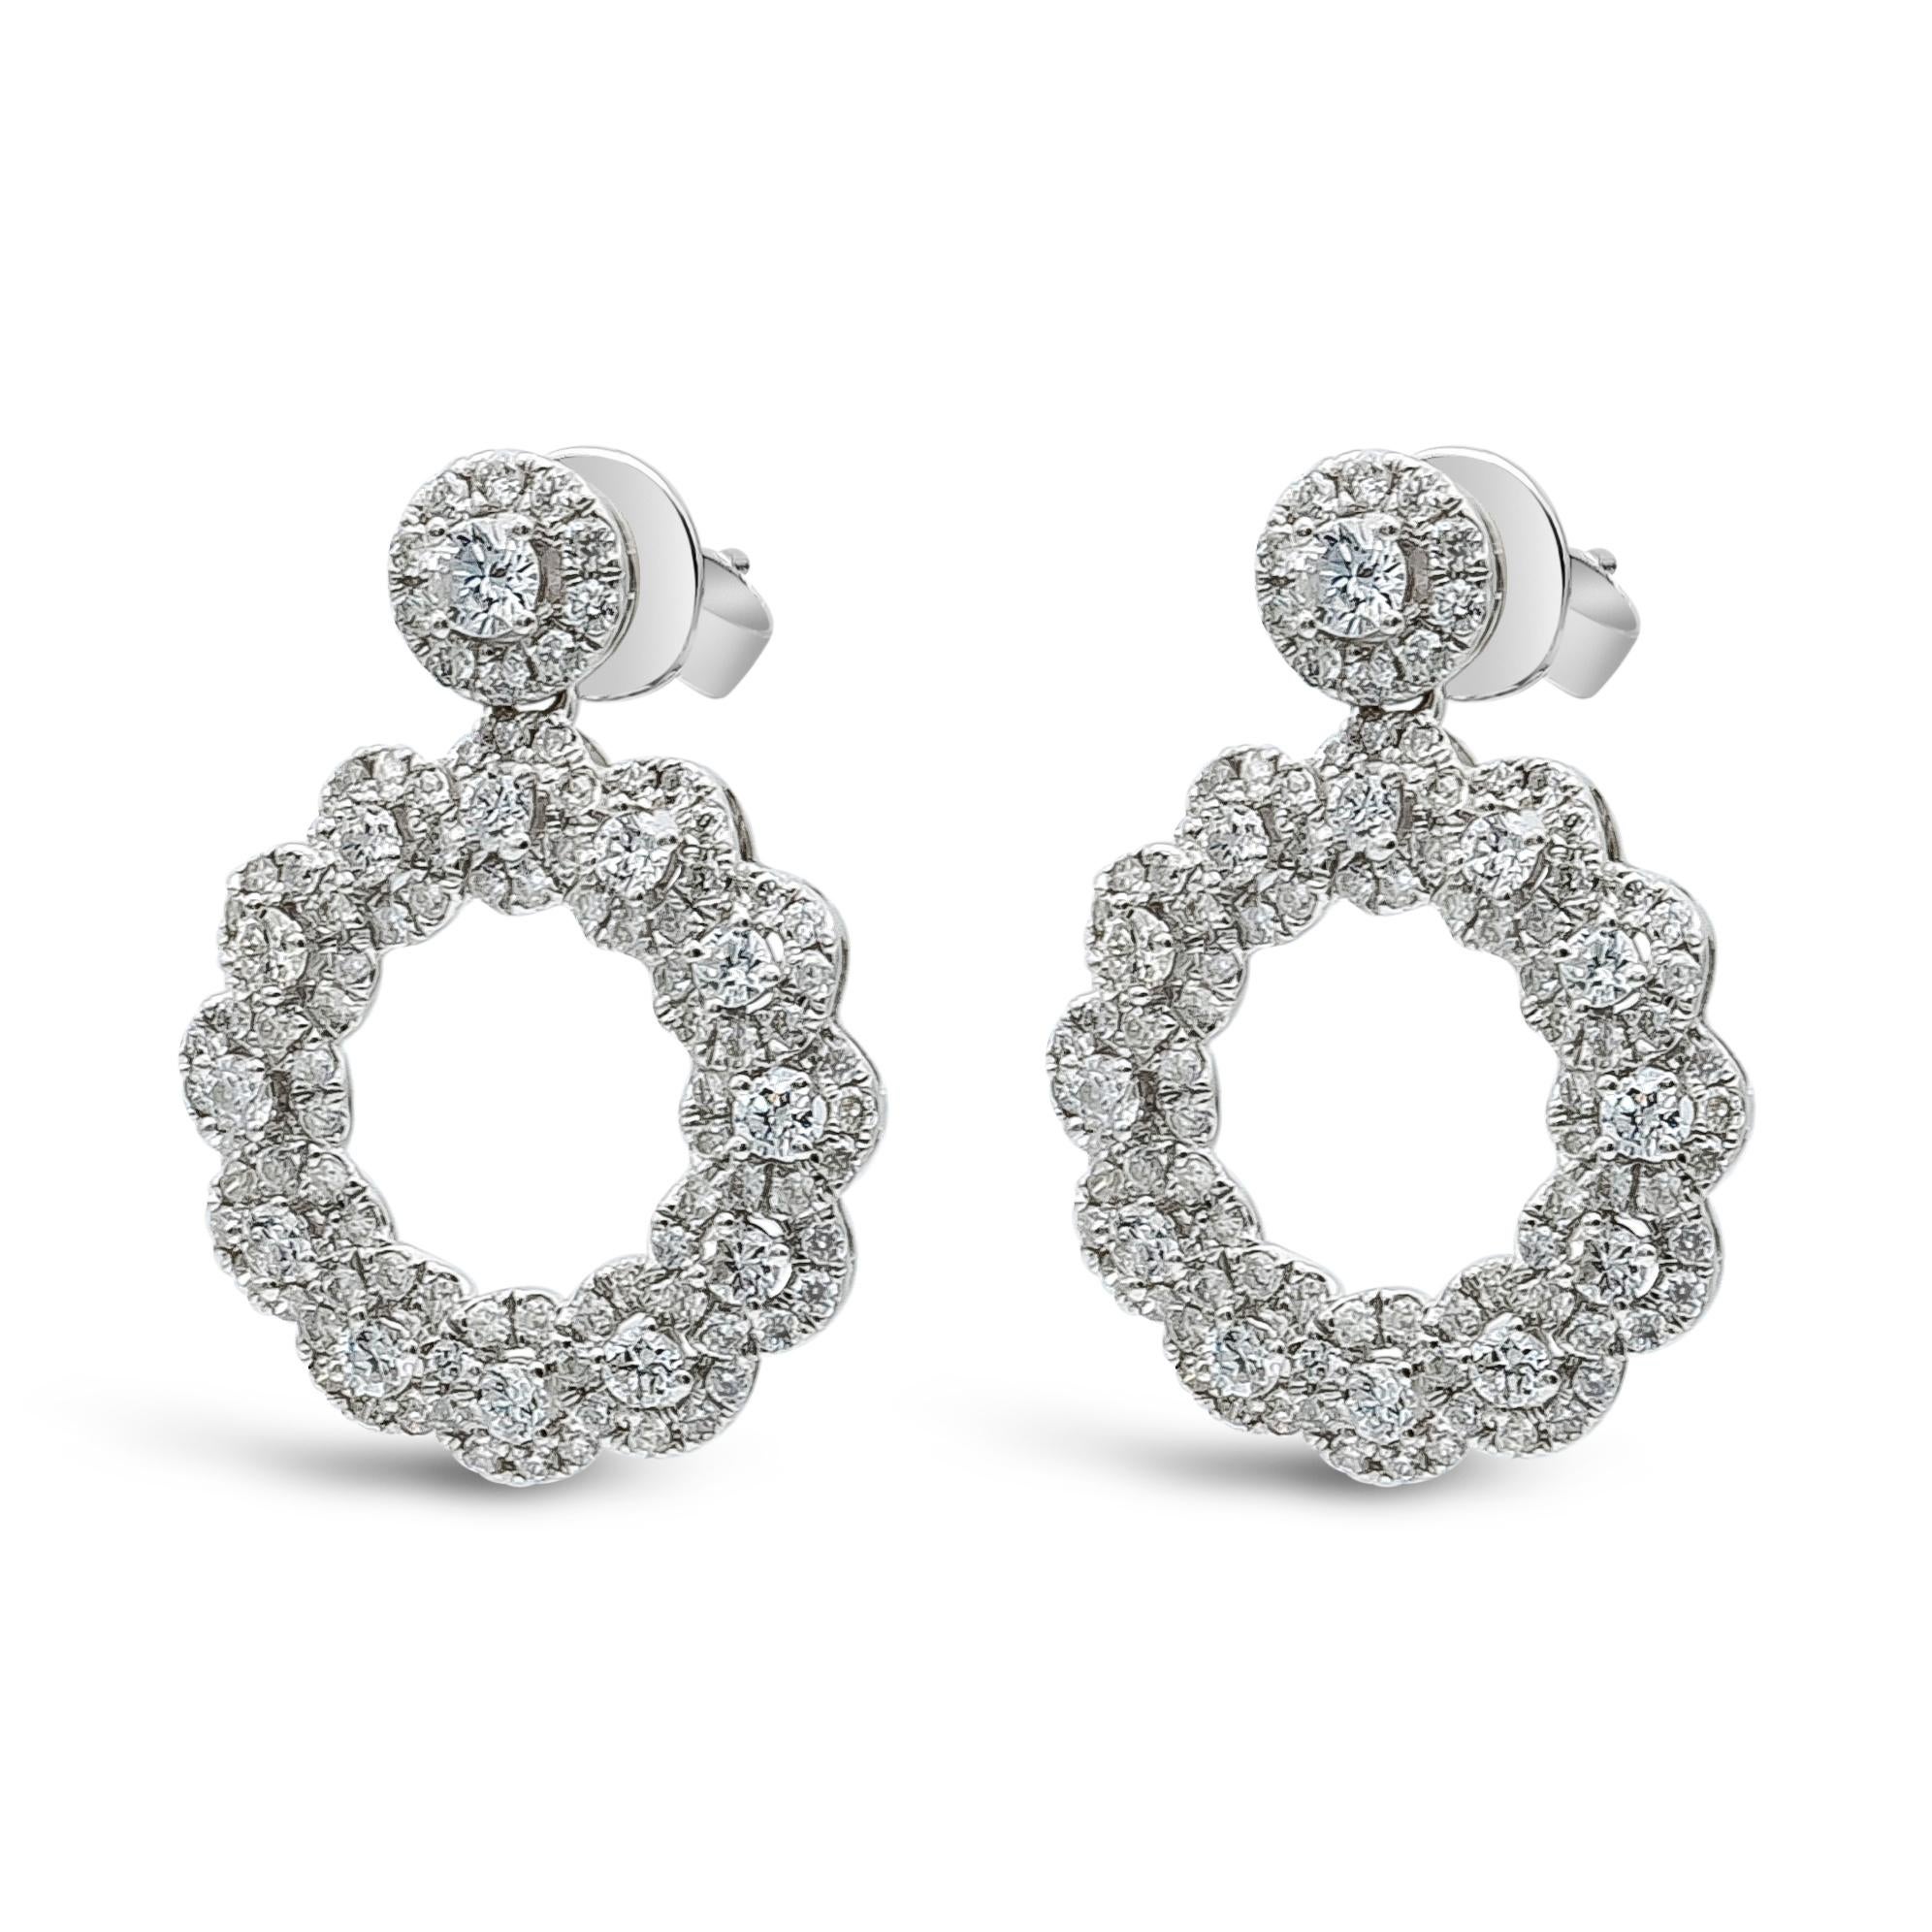 Un produit unique et de grande classe  Boucles d'oreilles pendantes mettant en valeur 1,42 carat au total, 214 diamants ronds de taille brillant, de couleur F-G et de pureté VS-SI. Serti dans un design circulaire ajouré très tendance, il est